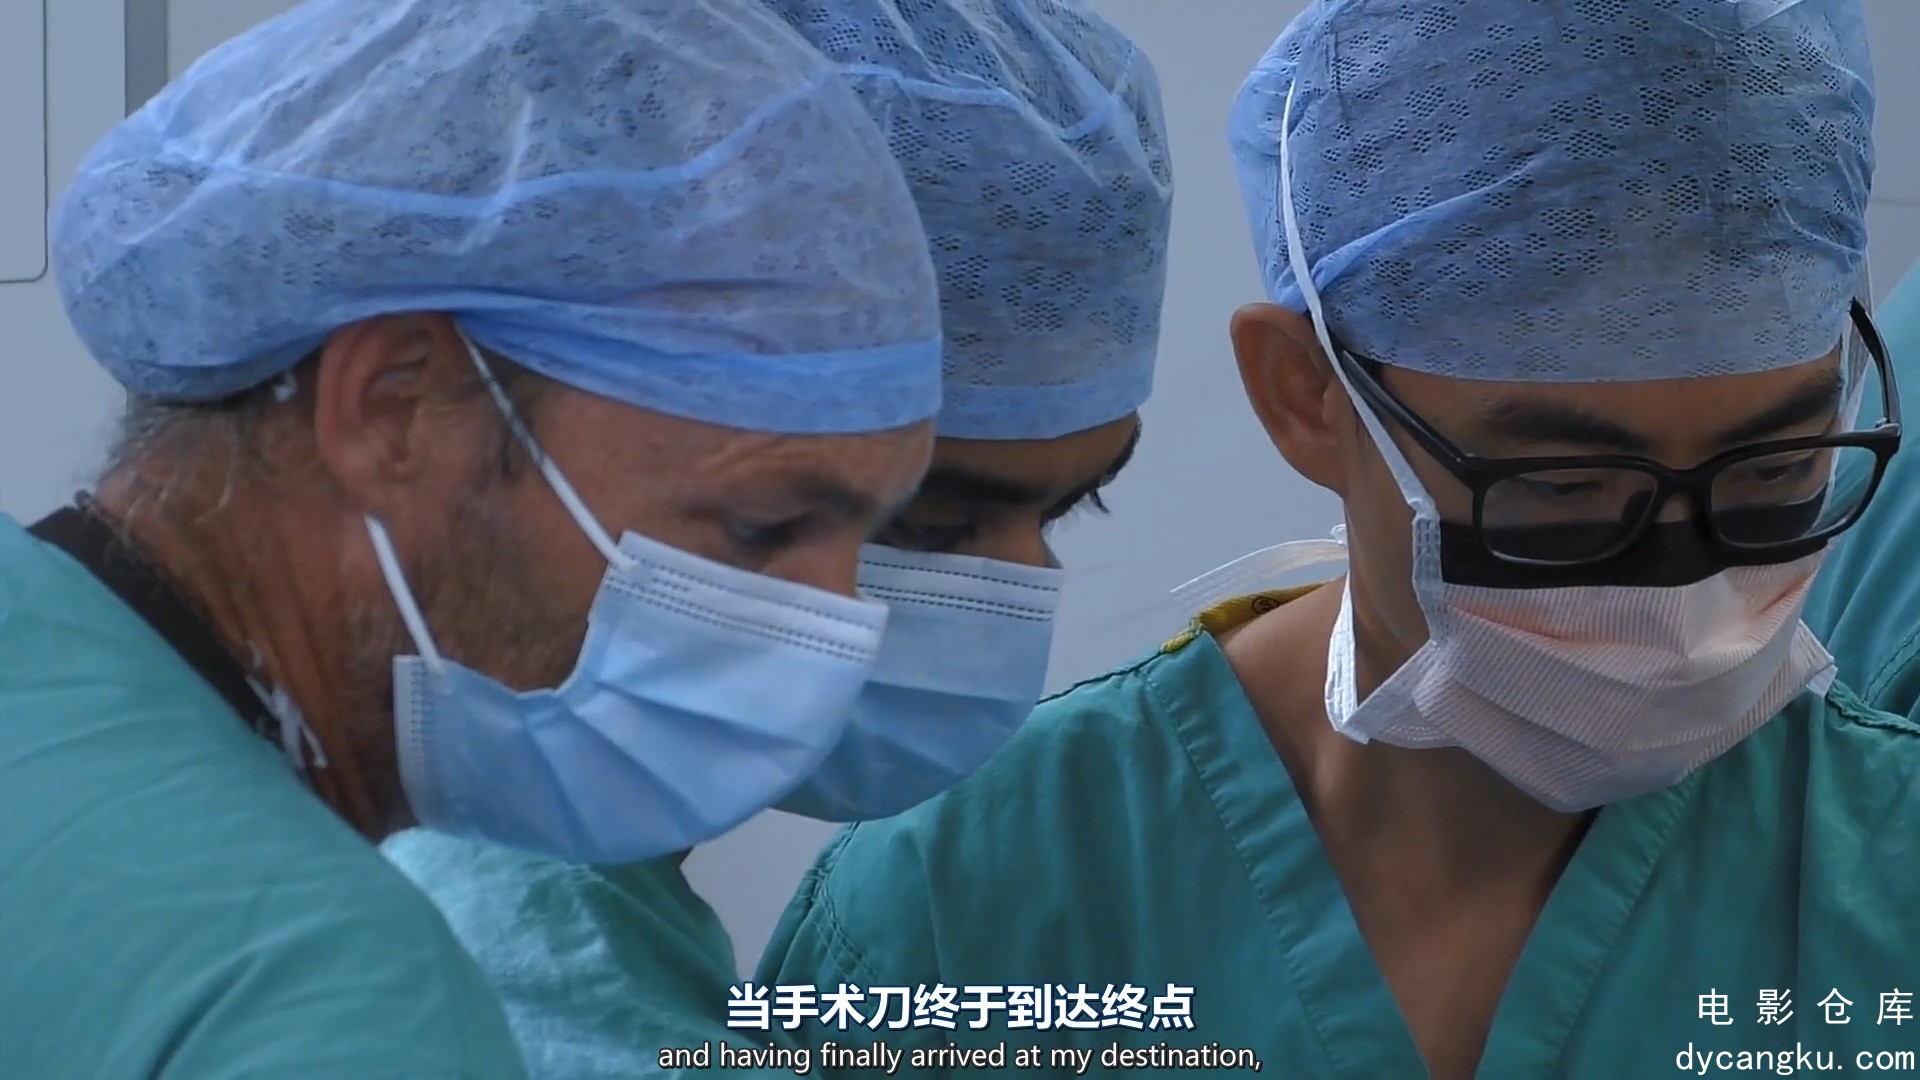 [电影仓库dycangku.com]手术室的故事Surgeons.At.the.Edge.of.Life.S04E02.1080p.mp4_.jpg